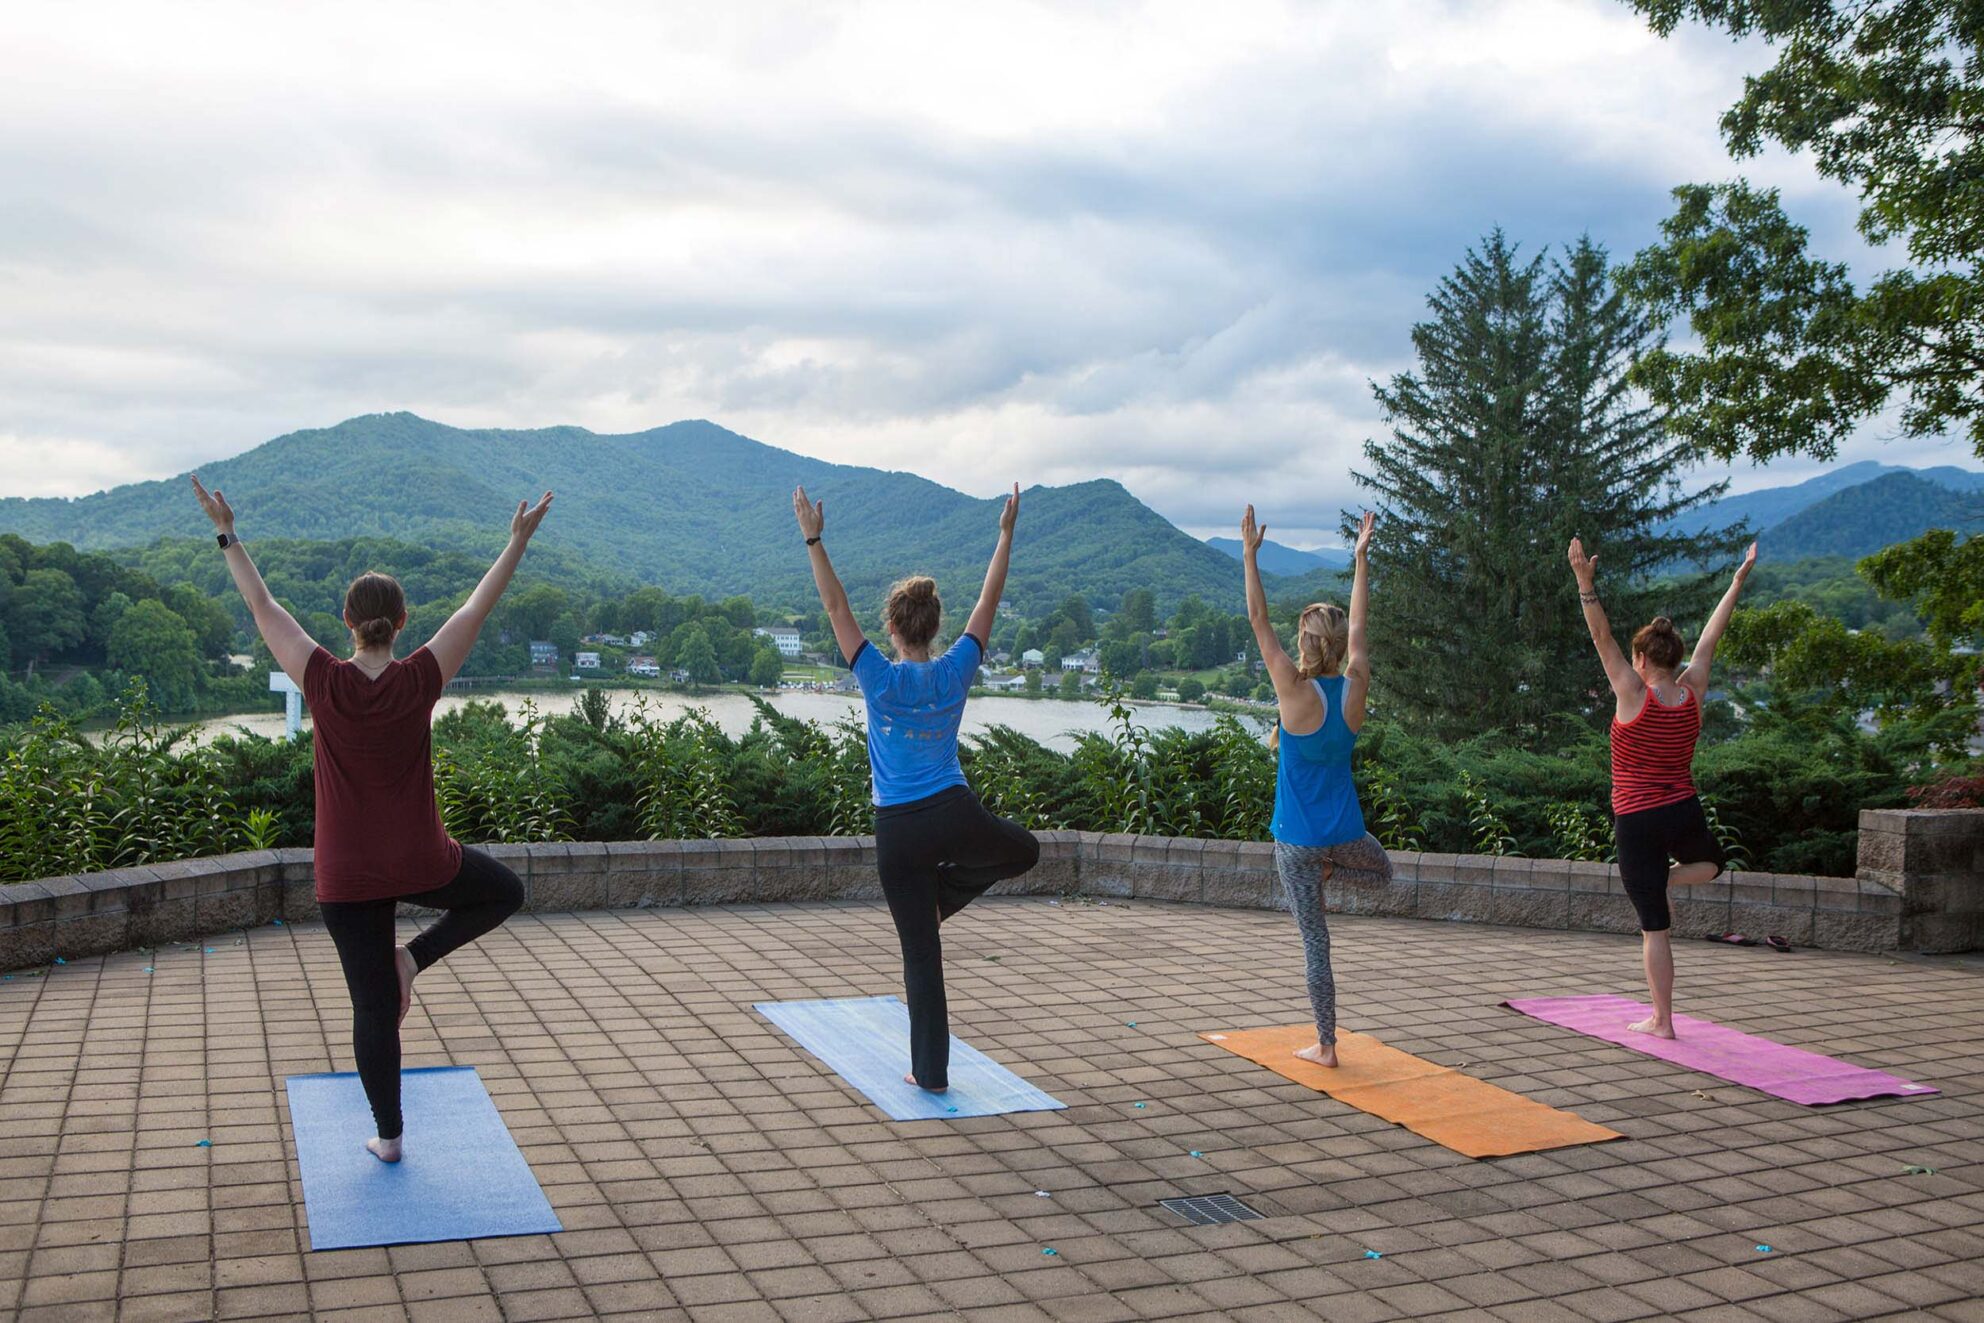 Yoga Class at Inspiration Point at Lake Junaluska